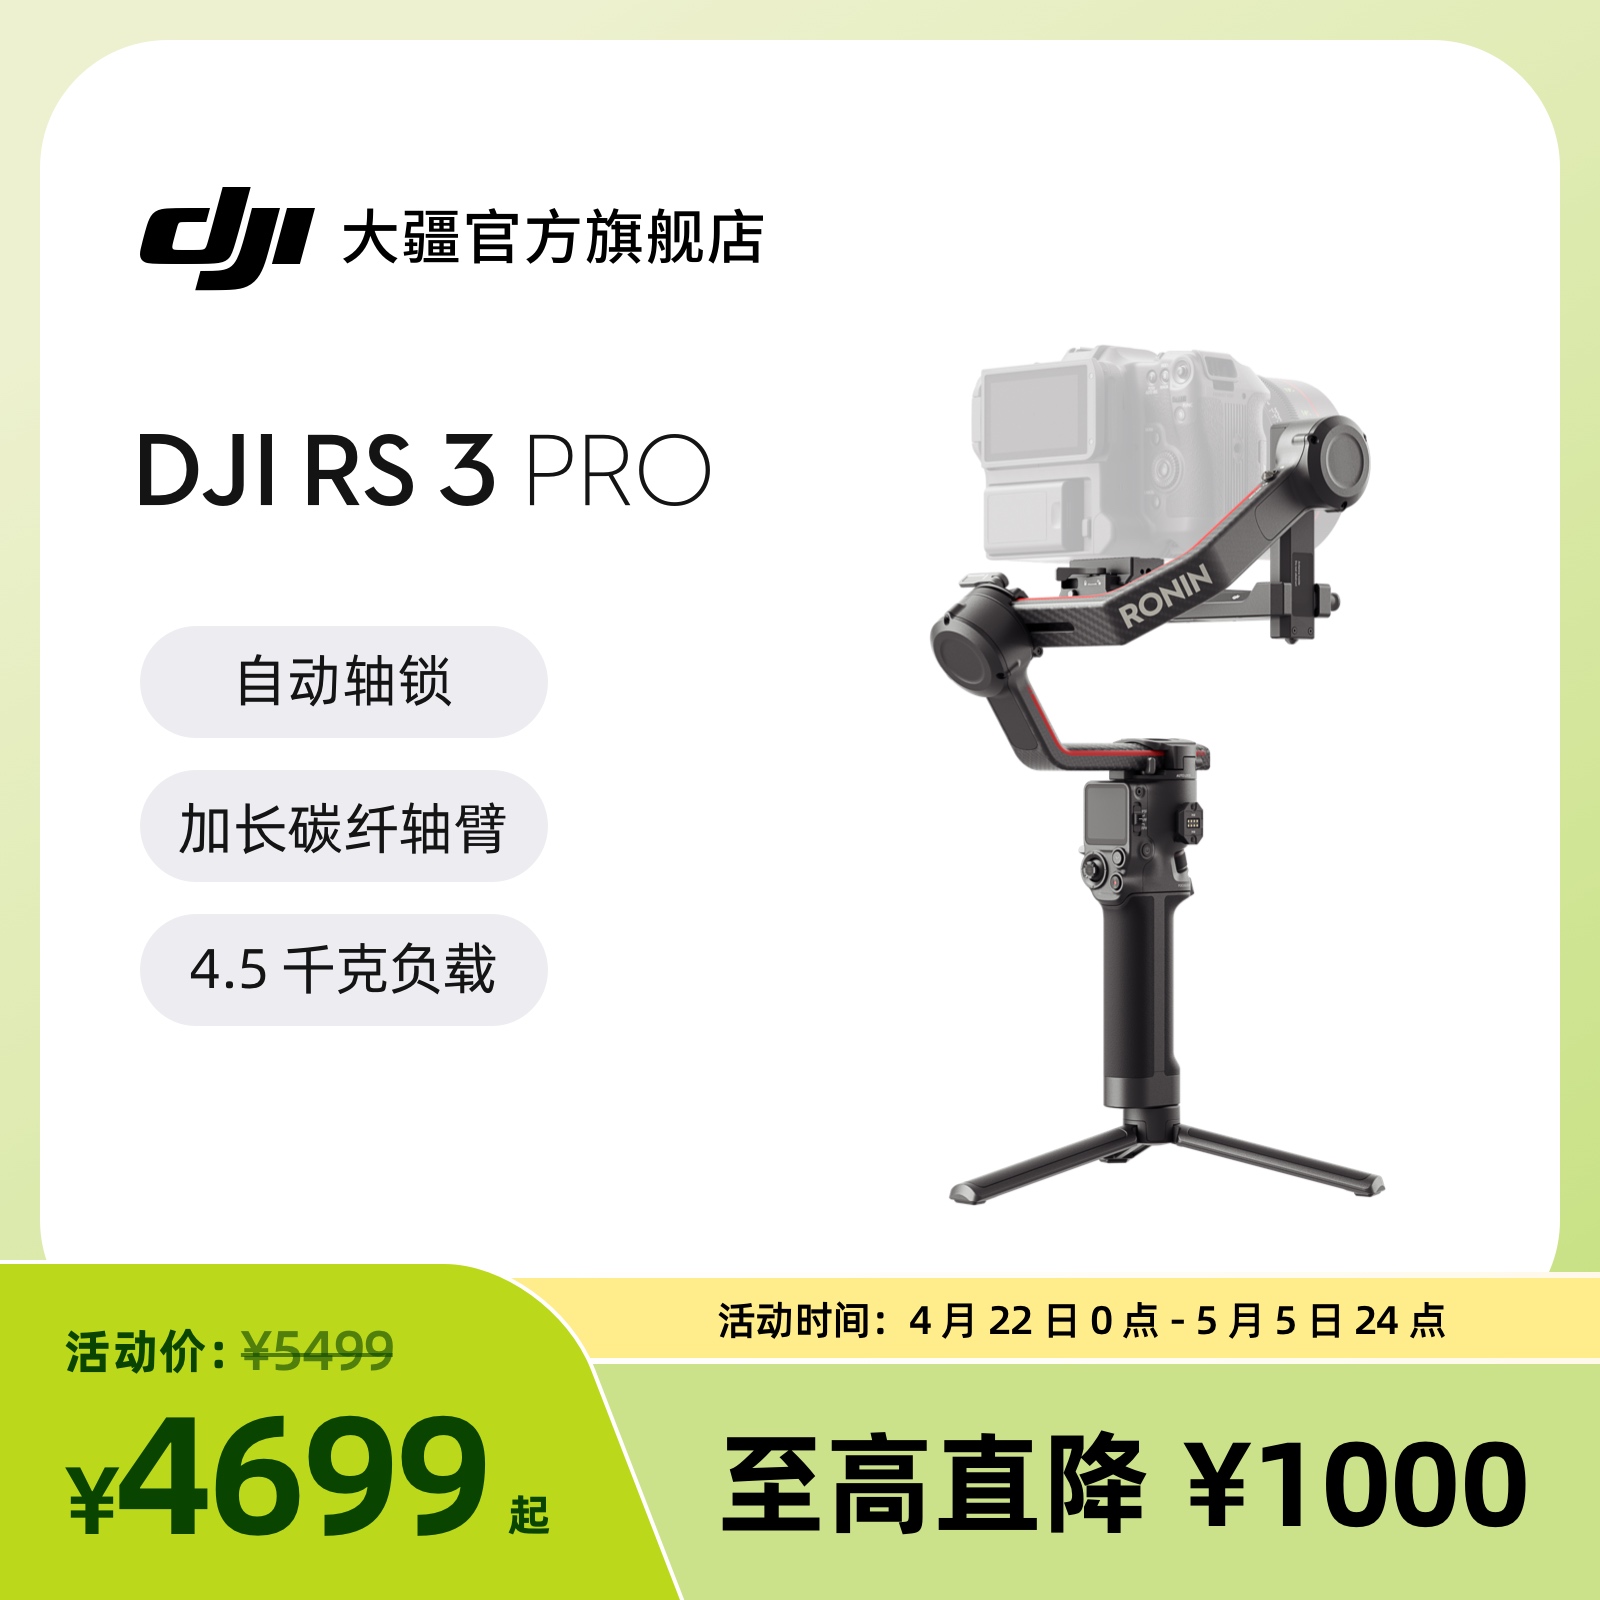 大疆DJI RS 3 Pro 如影s RoninS 手持稳定器 大疆手持云台防抖 专业单反相机云台 大疆云台稳定器